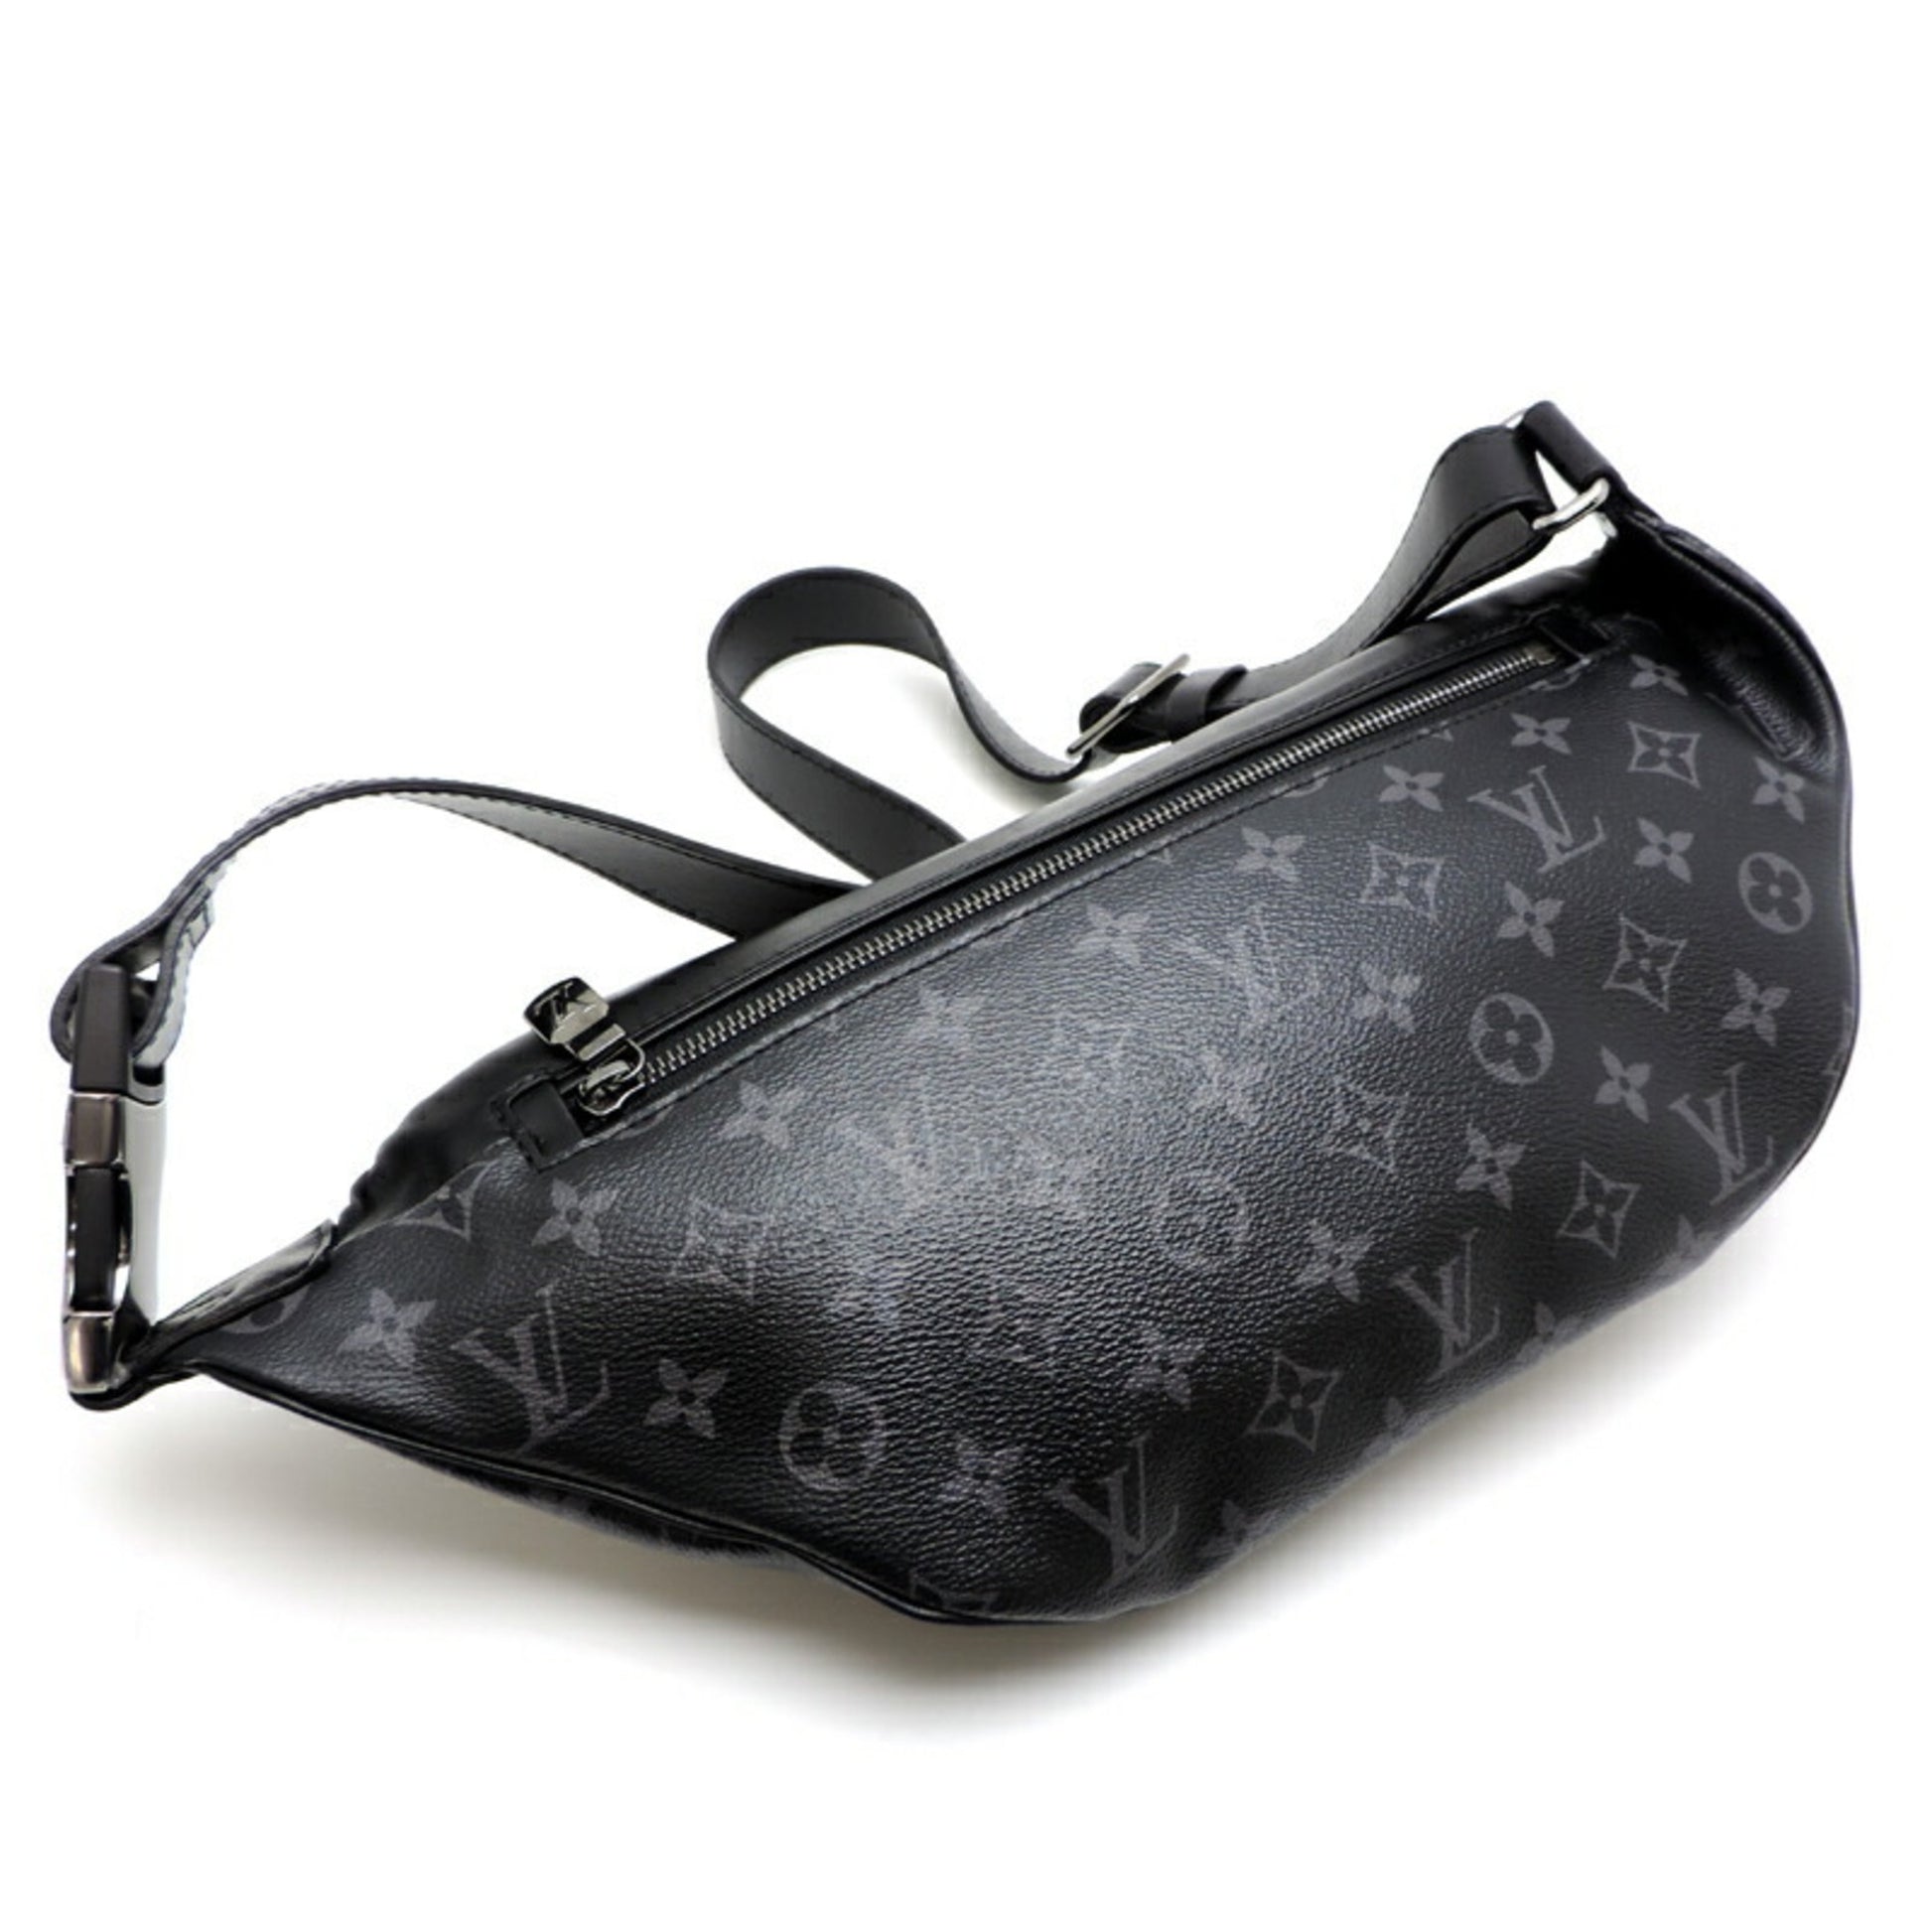 Louis Vuitton] Waist Bag Discovery Bum Bag Monogram Eclipse M44336 Body Bag  Men's Black [Parallel Import], black (black 19-3911tcx), One Size :  : Fashion